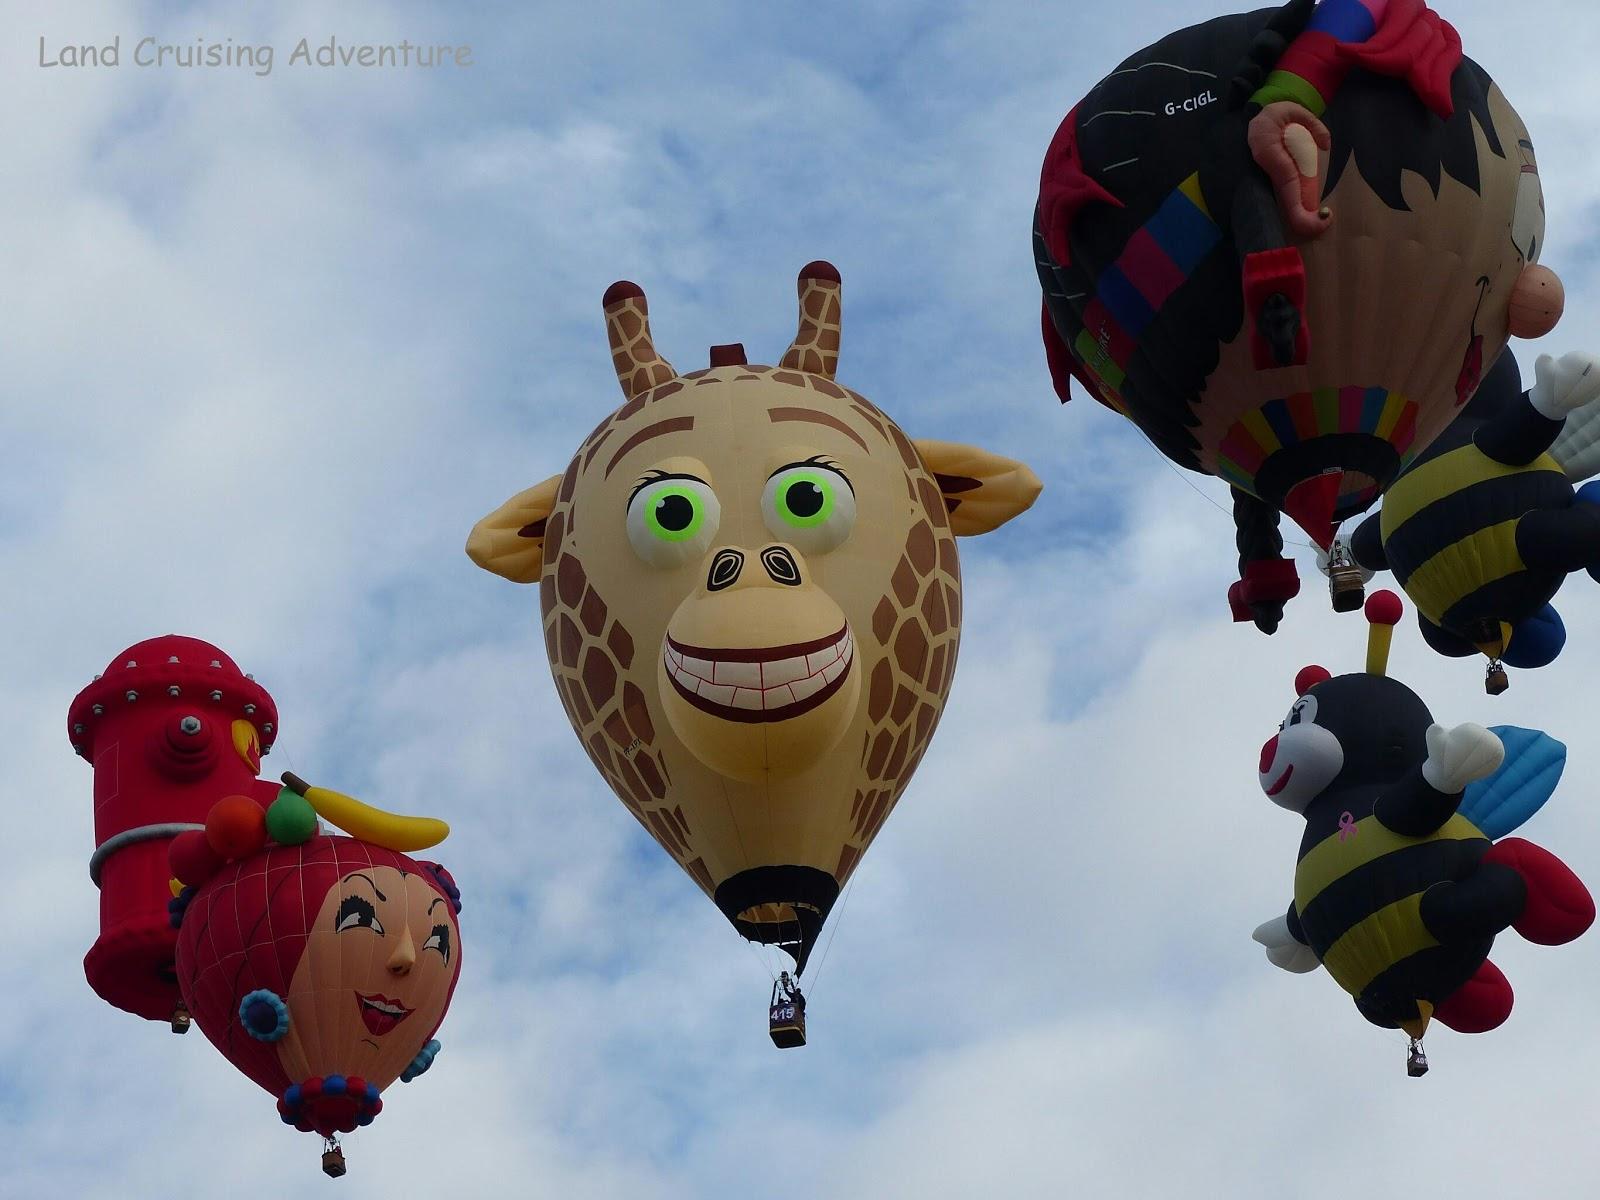 Land Cruising Adventure: Albuquerque Balloon Fiesta